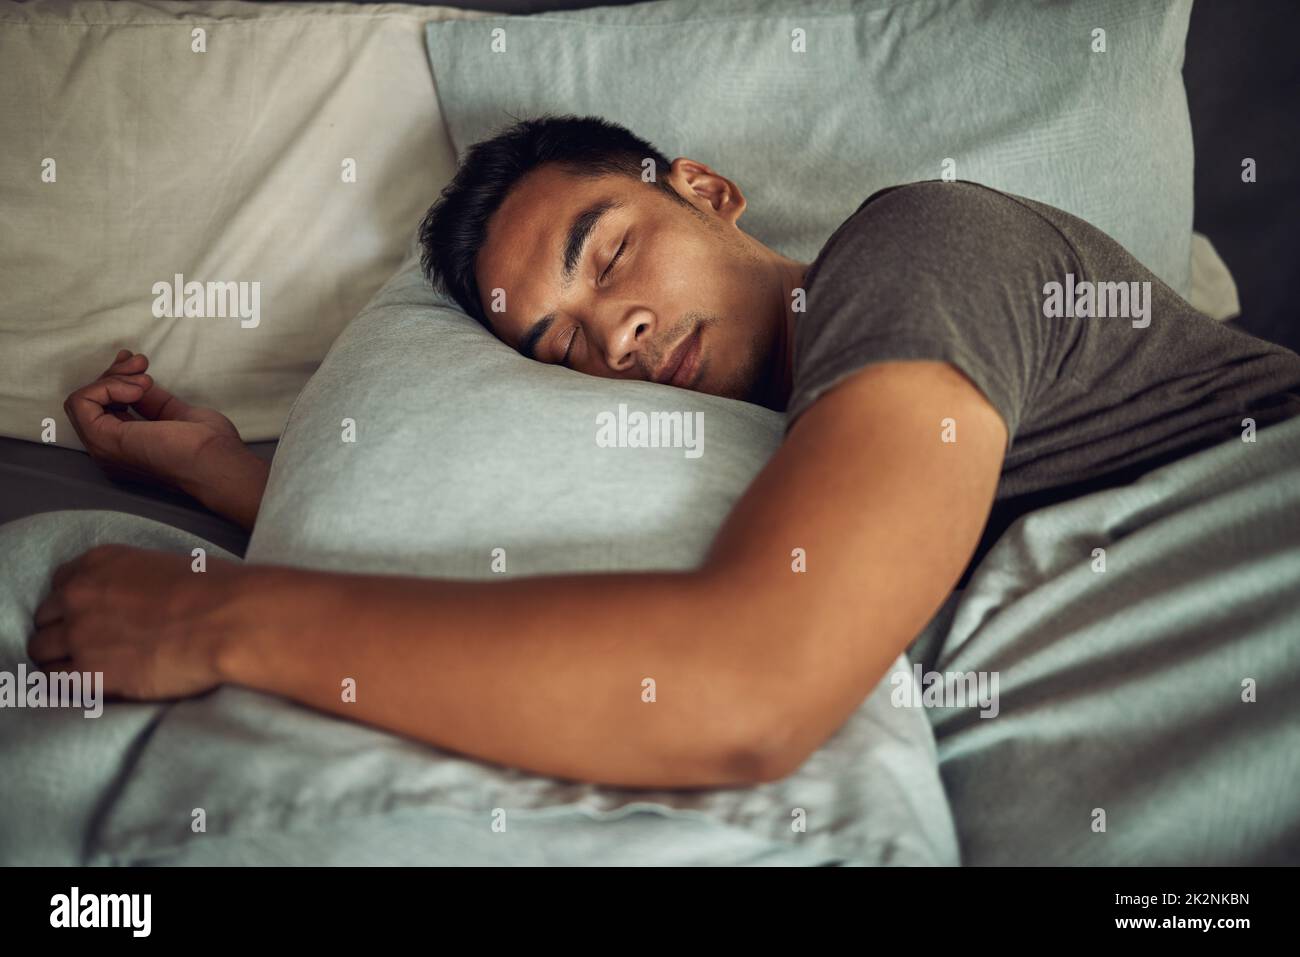 Nichts beruhigt die Seele wie ein tiefer Schlaf. Aufnahme eines jungen Mannes, der zu Hause friedlich im Bett schläft. Stockfoto